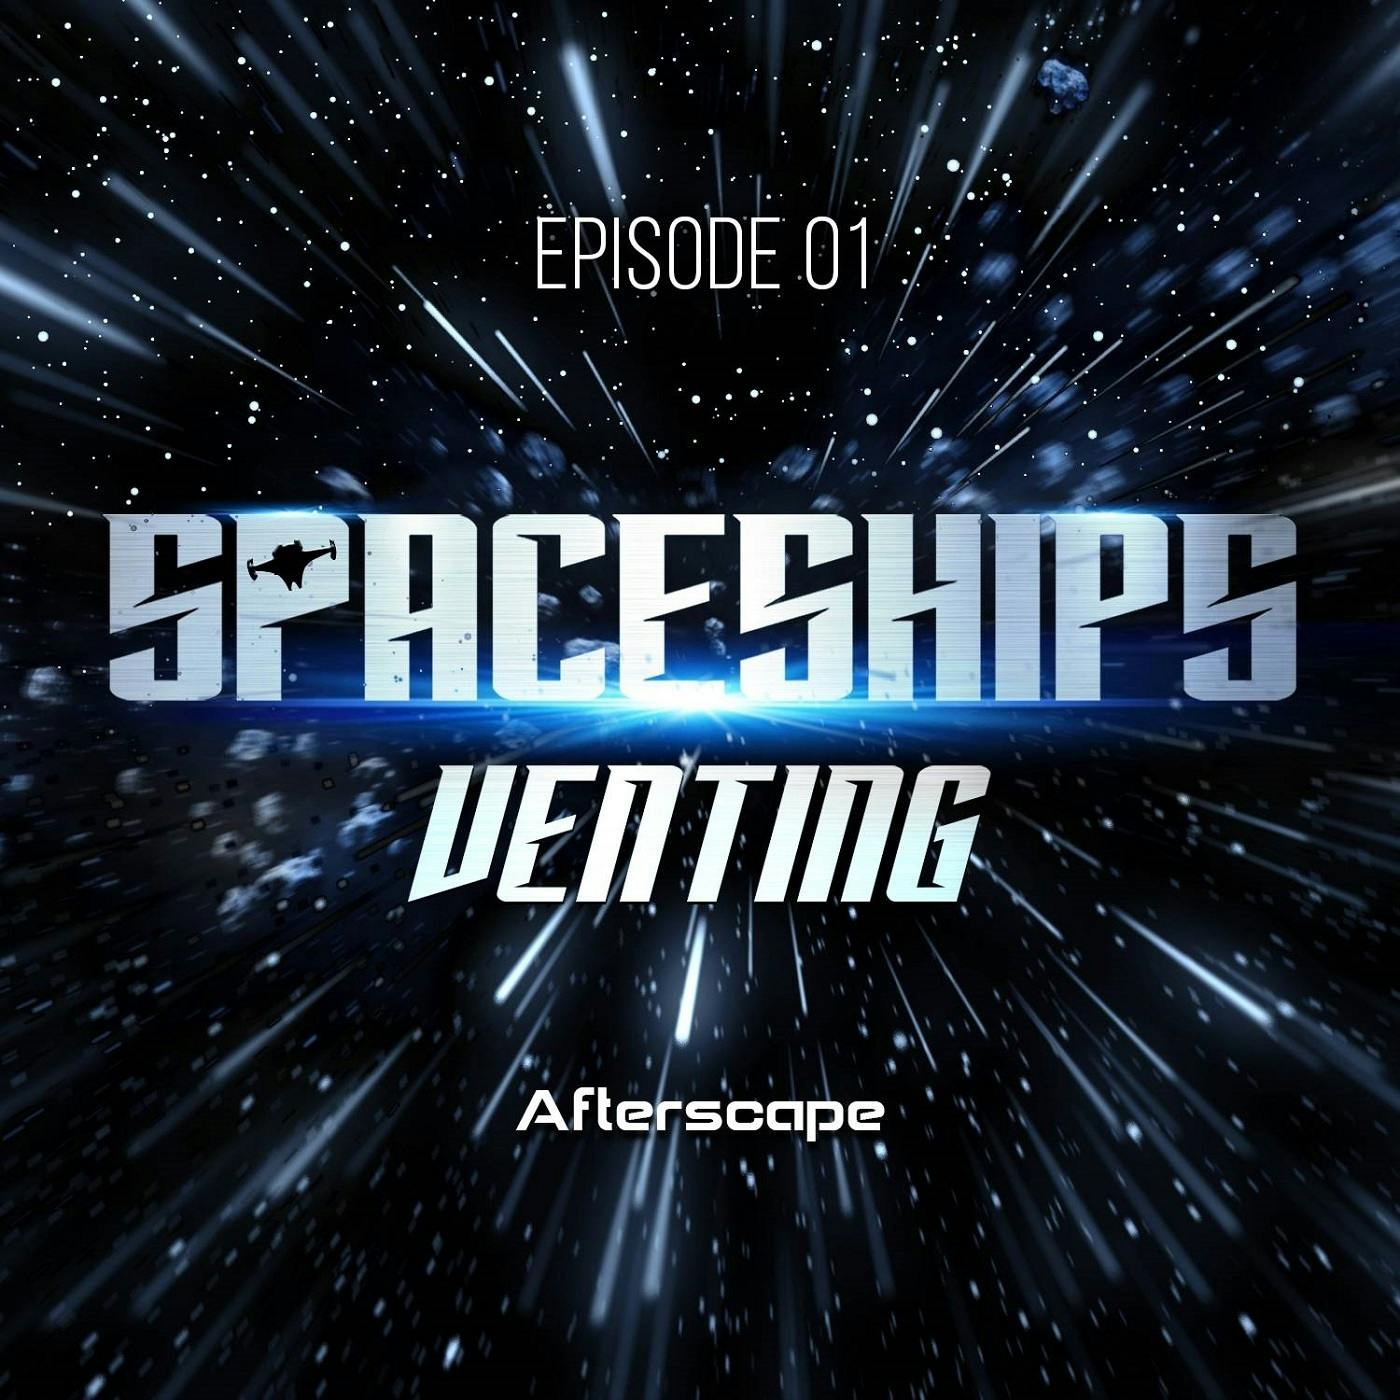 Presenting: Spaceships